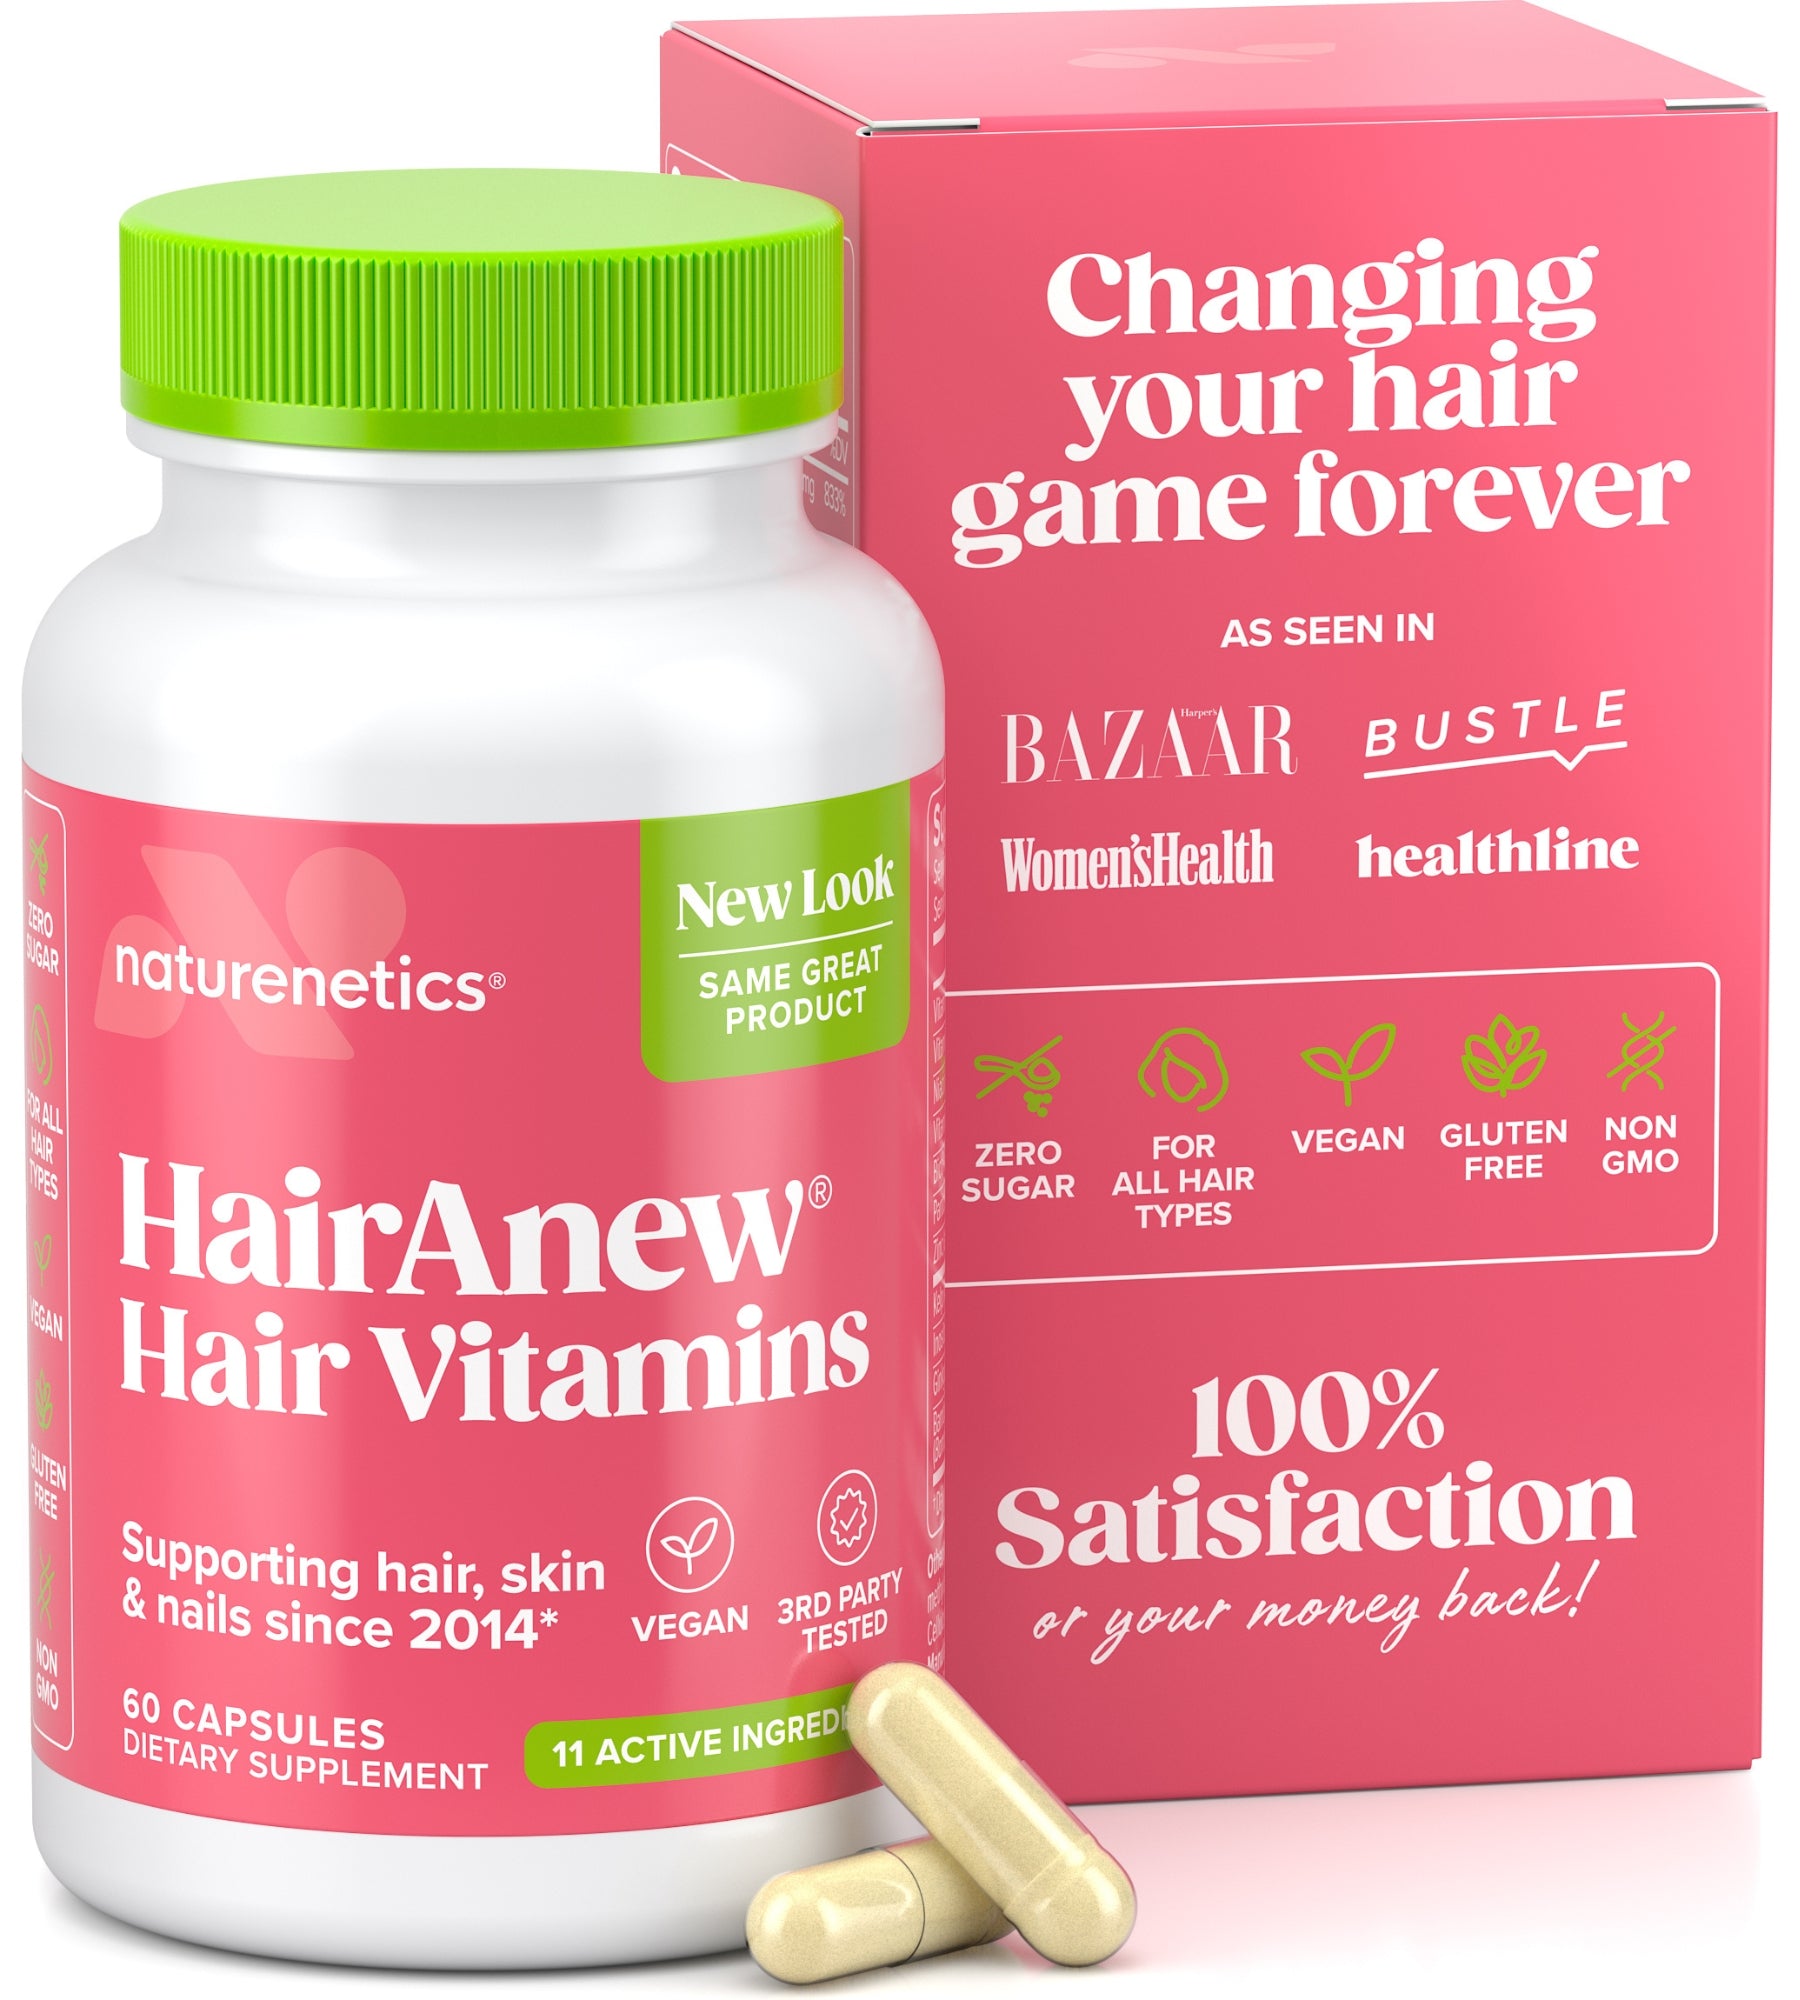 Naturenetics HairAnew Hair Vitamins with Biotin